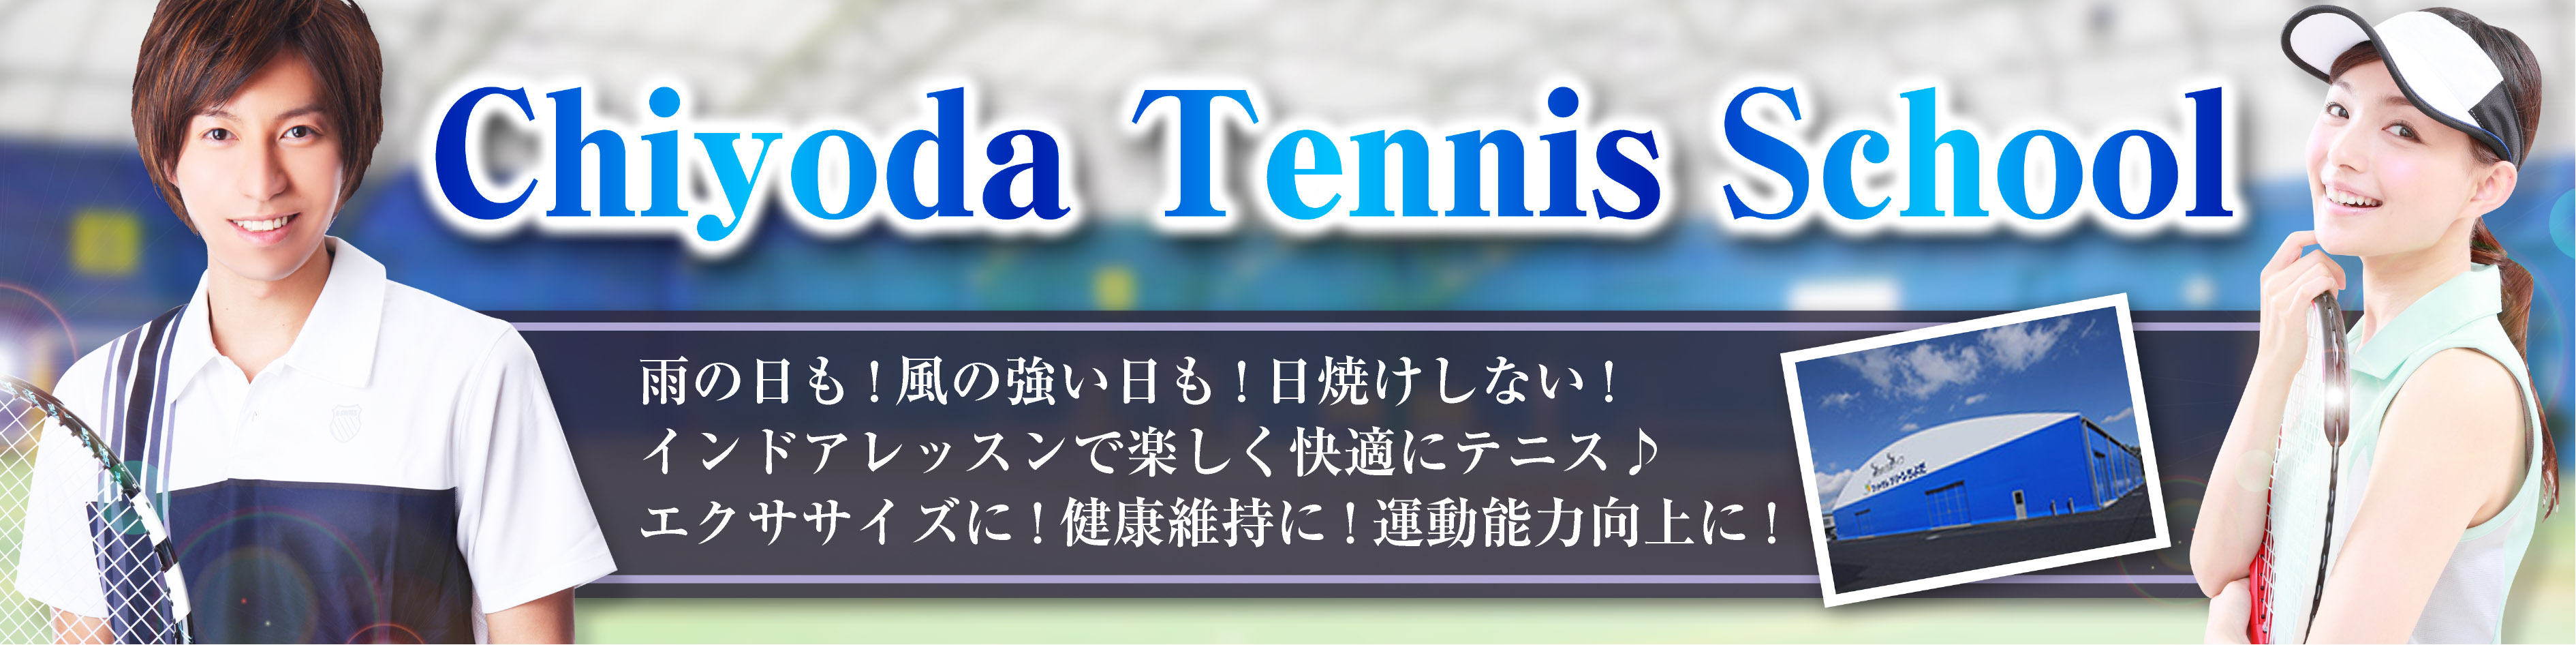 テニスを始めるならちよだテニススクール